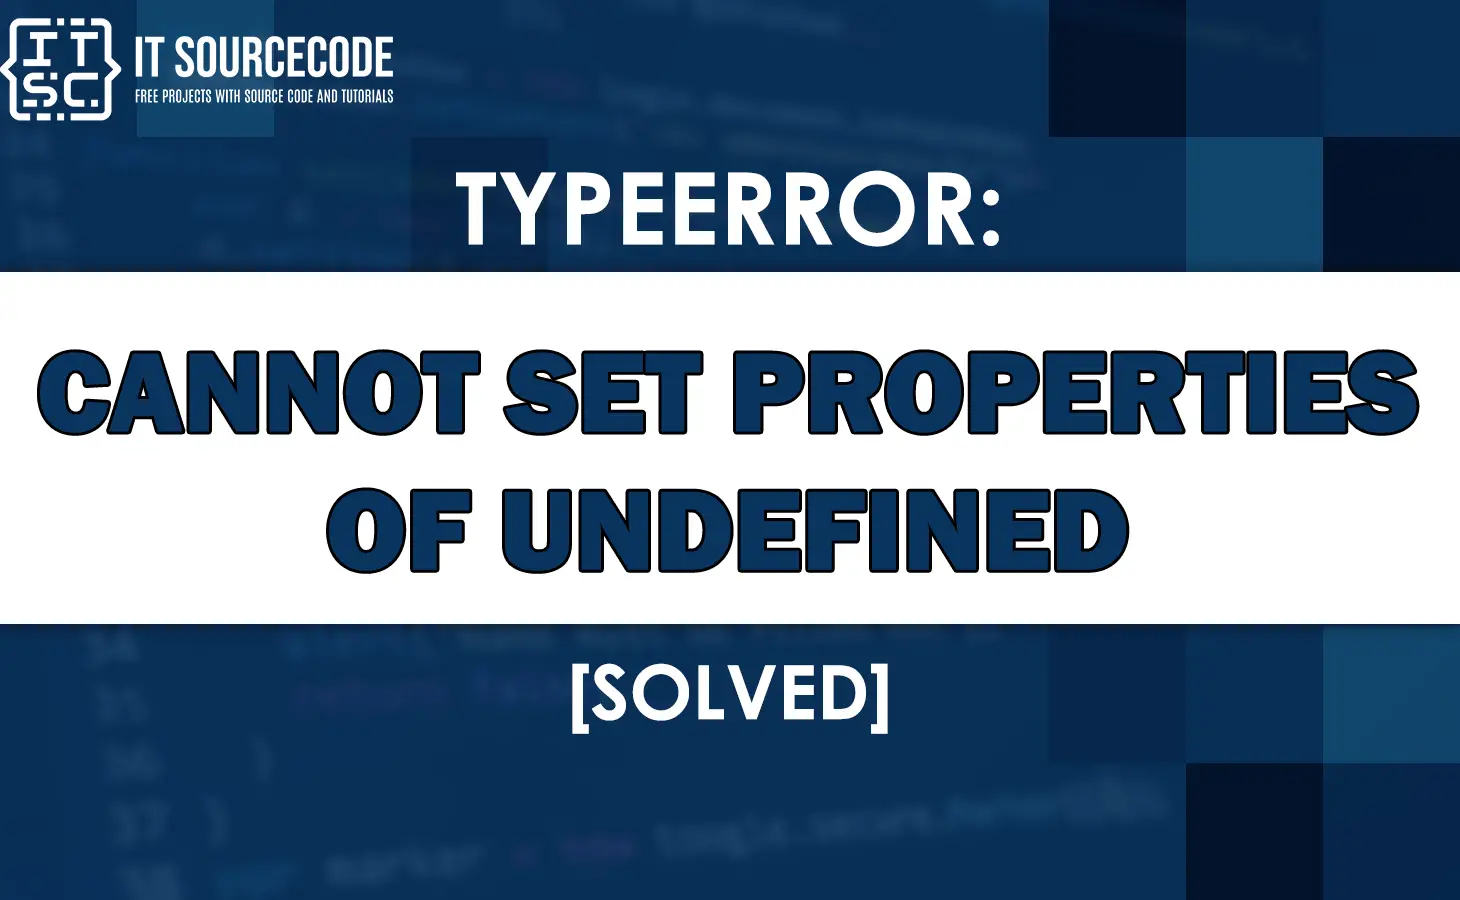 Typeerror cannot set properties of undefined